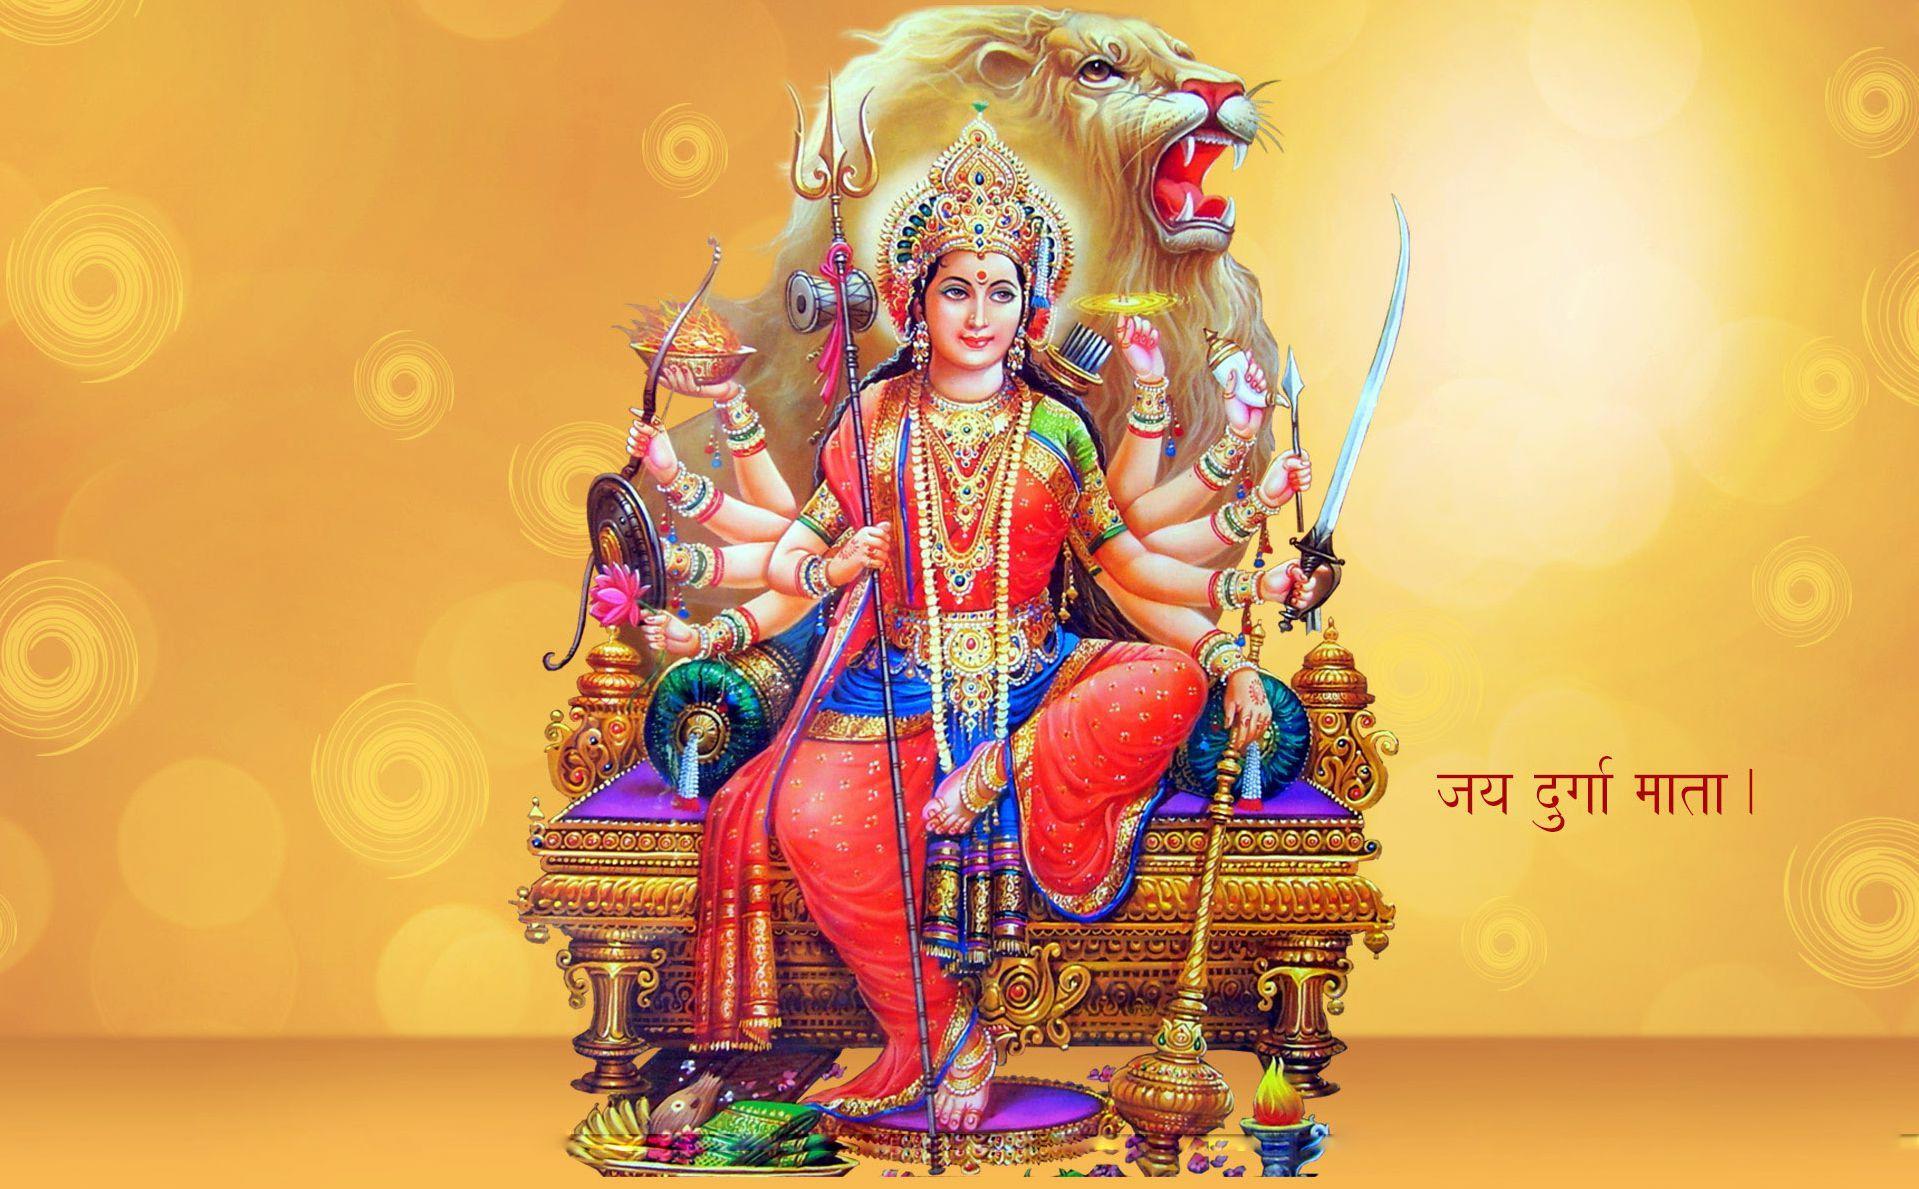 Maa Durga Image HD. Sherawali Maa Durga Wallpaper